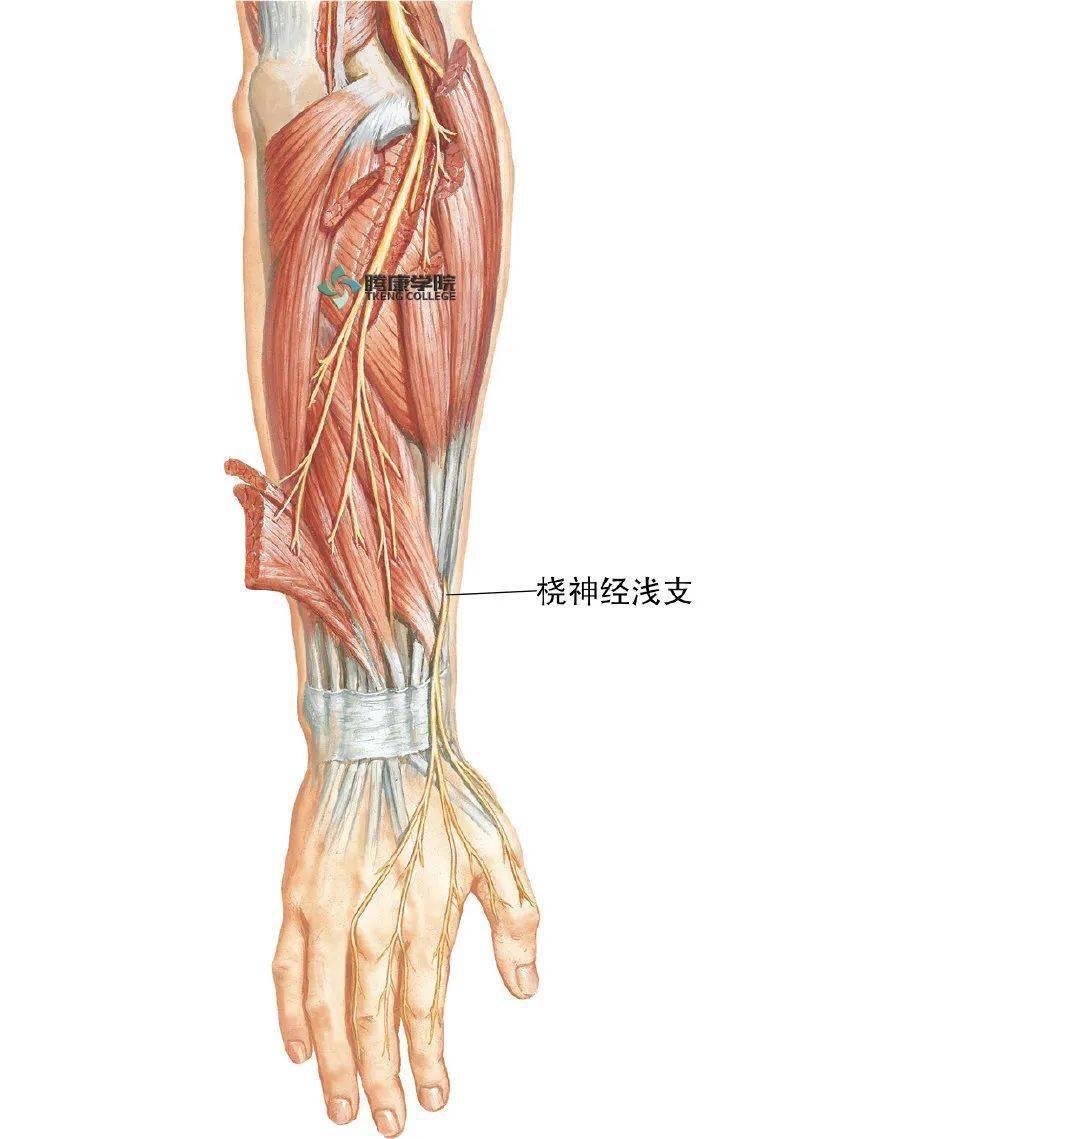 这些分支跨过腕部鼻烟窝,在拇伸肌肌腱浅面和腕关节与舟骨的后方走向